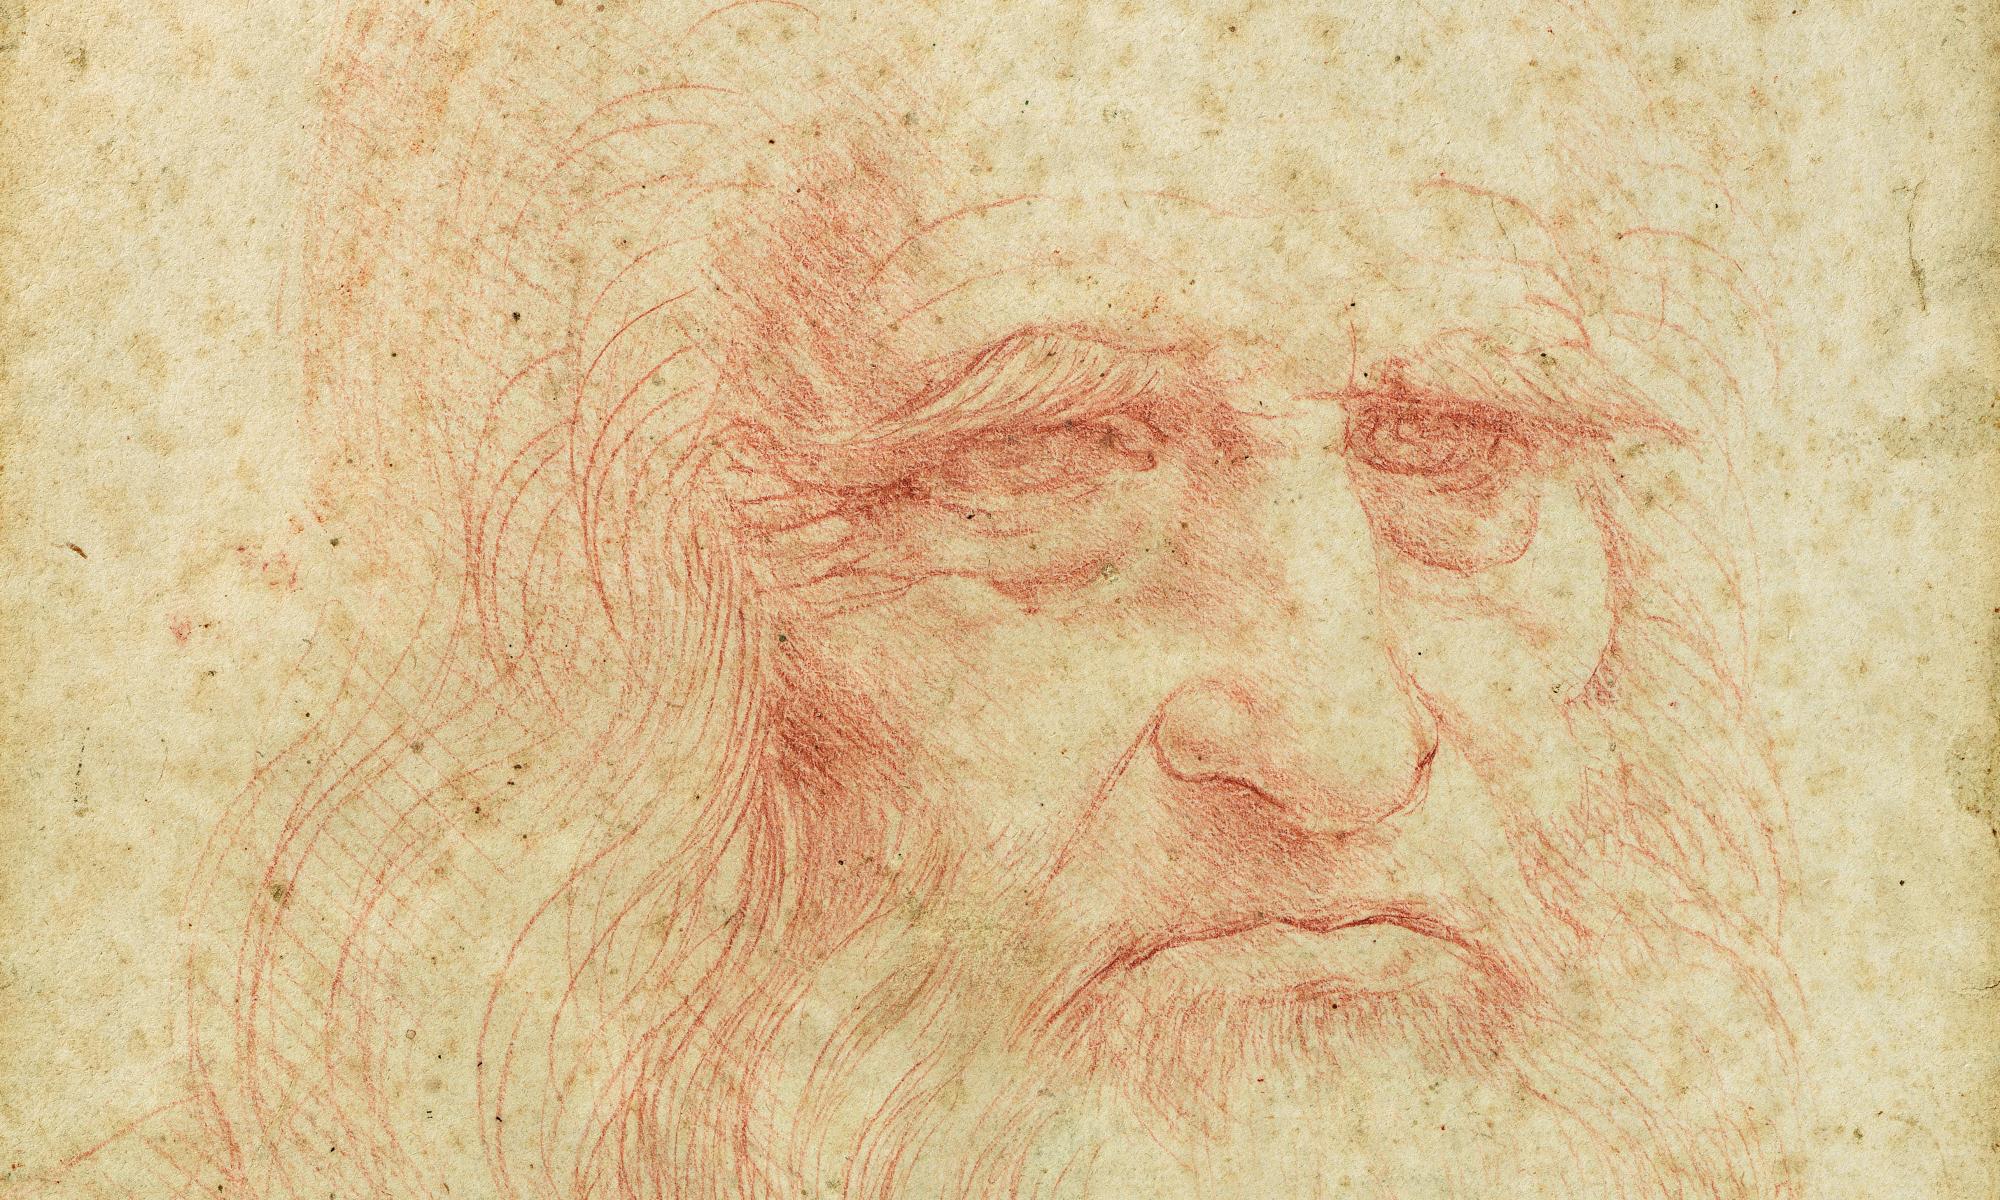 Torino, torna visibile al pubblico l'Autoritratto di Leonardo della Biblioteca Reale 